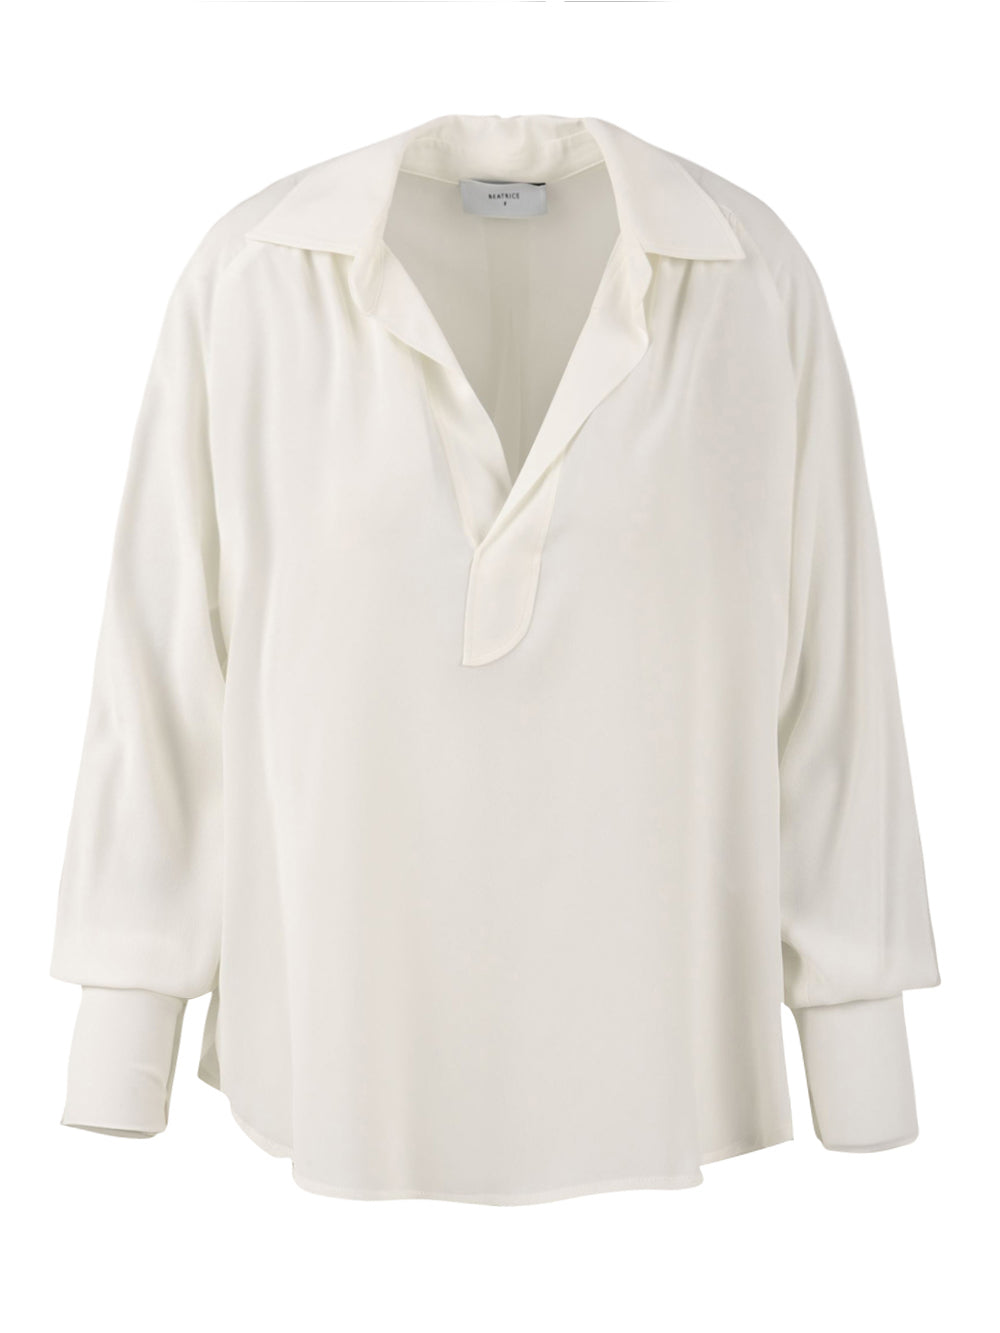 Camicia Donna tinta unita bianco, Atelier Legora